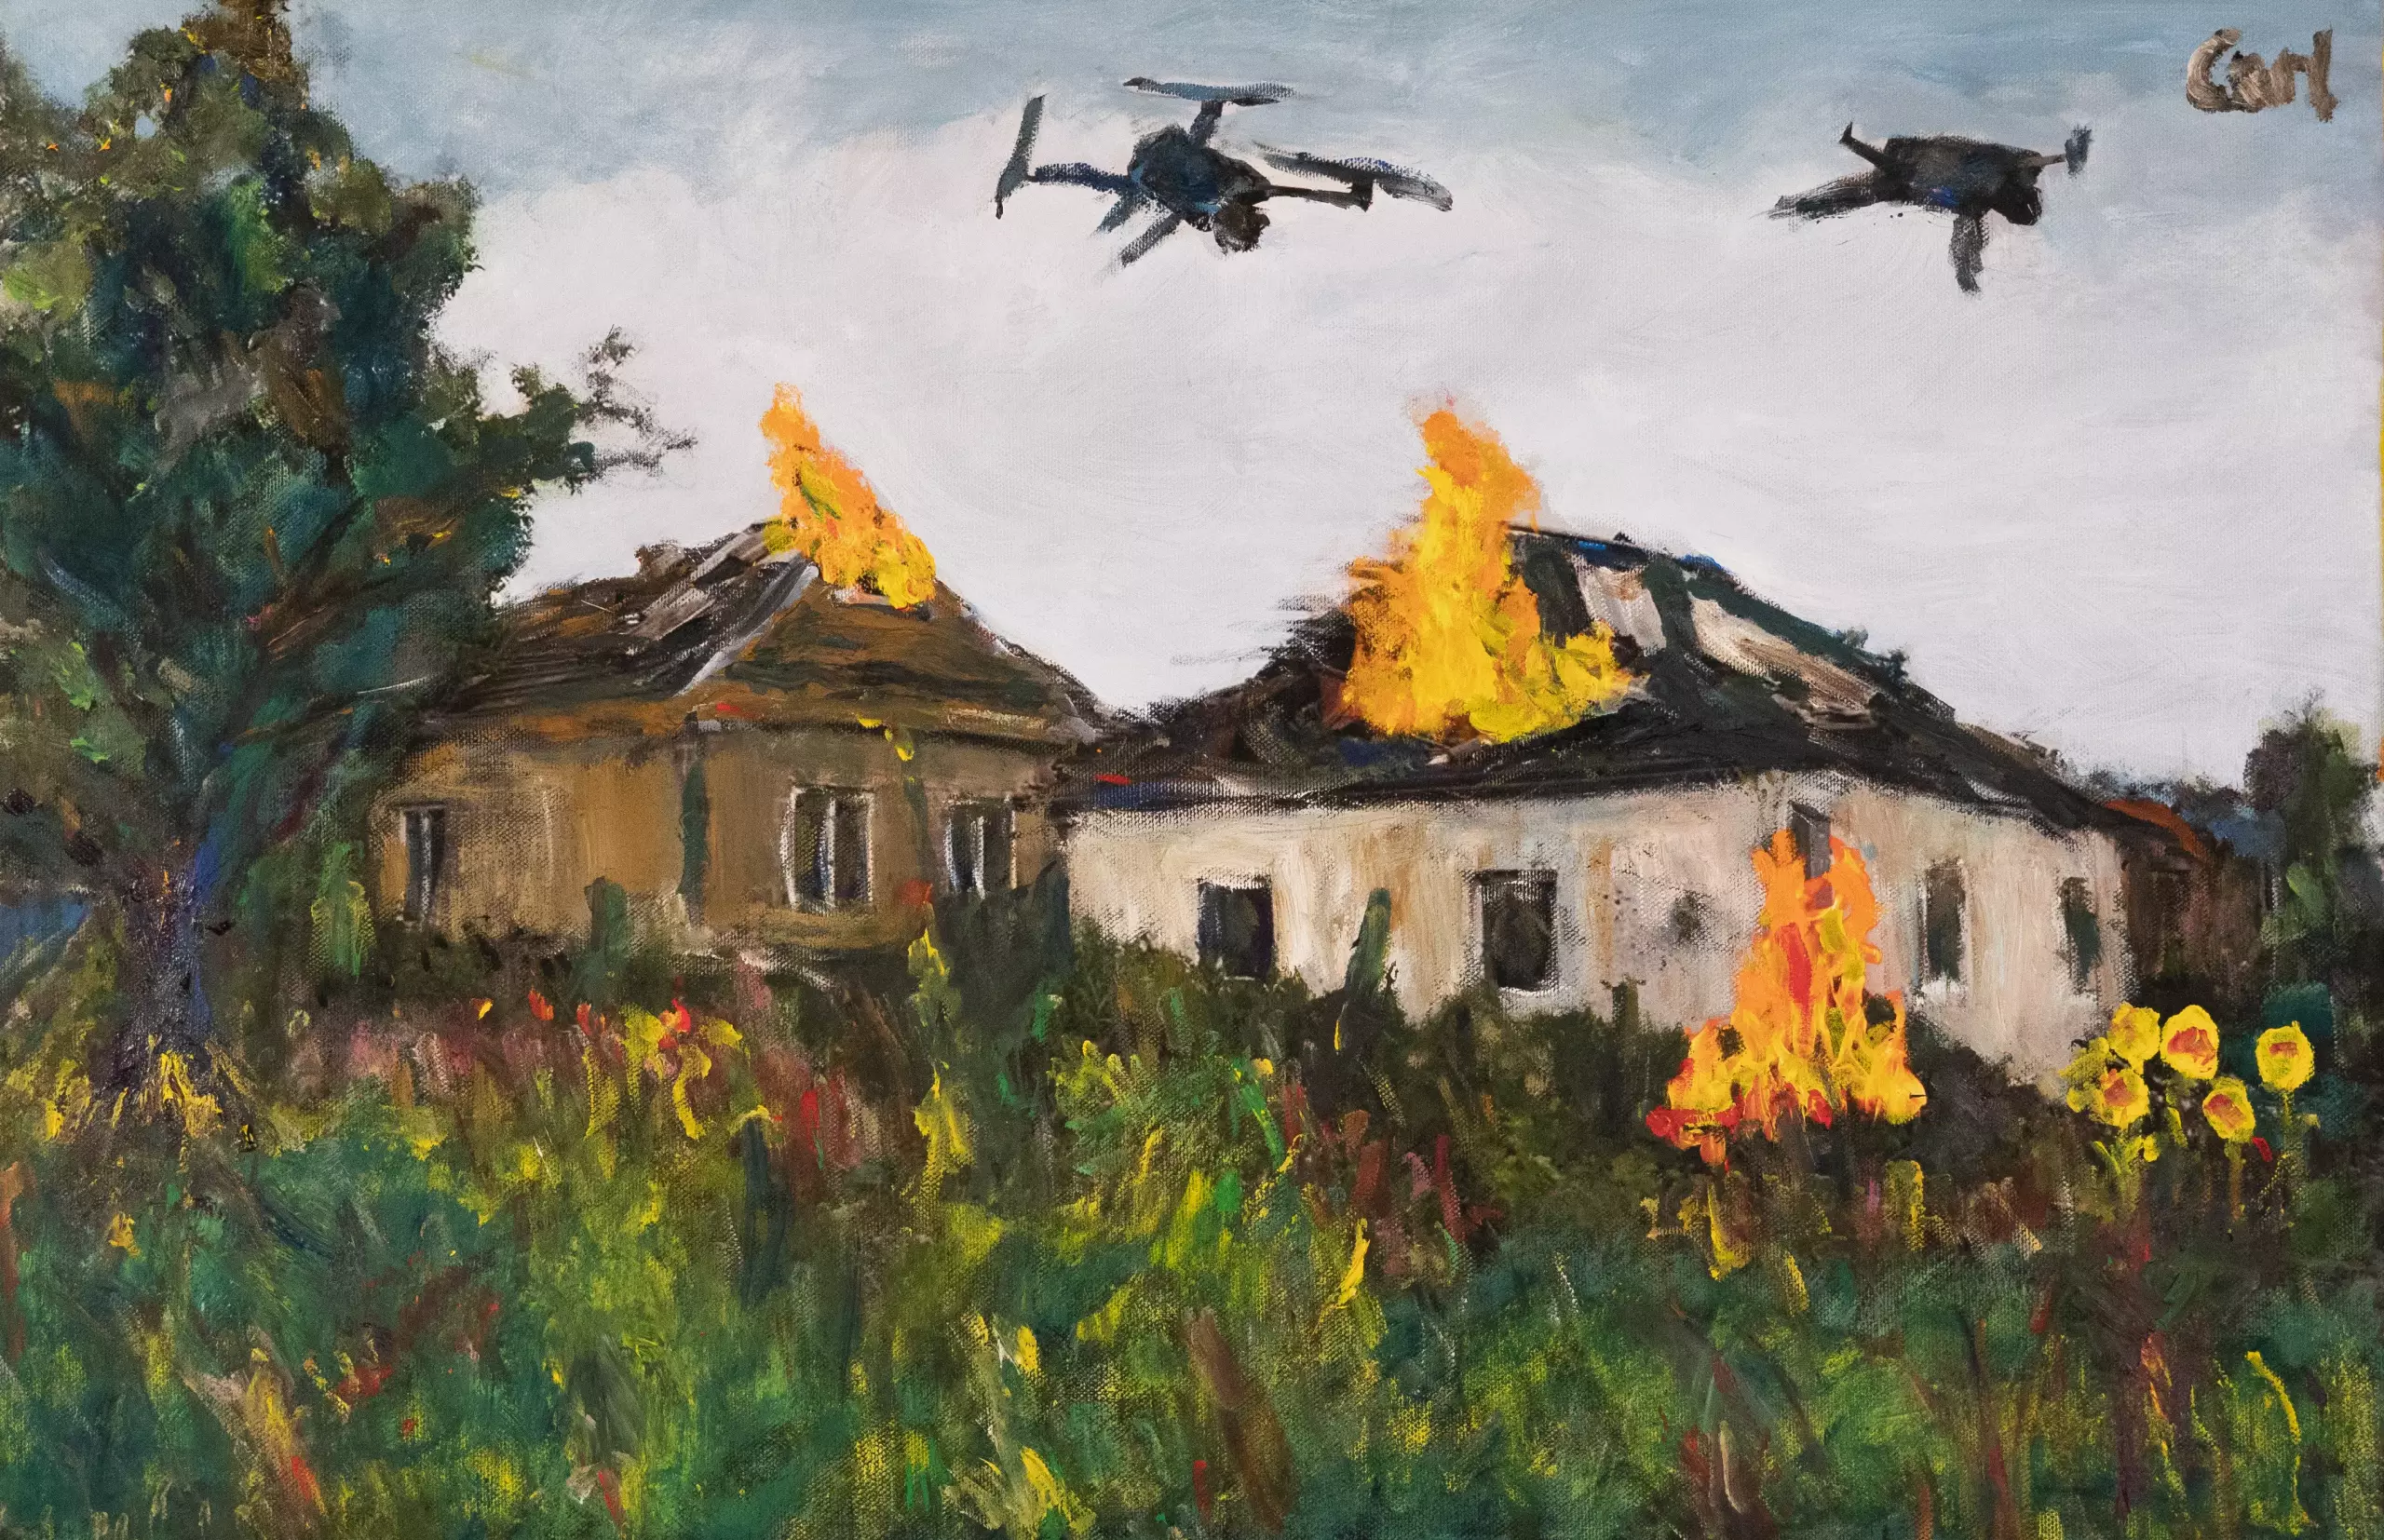 Drones in Ukrainian village